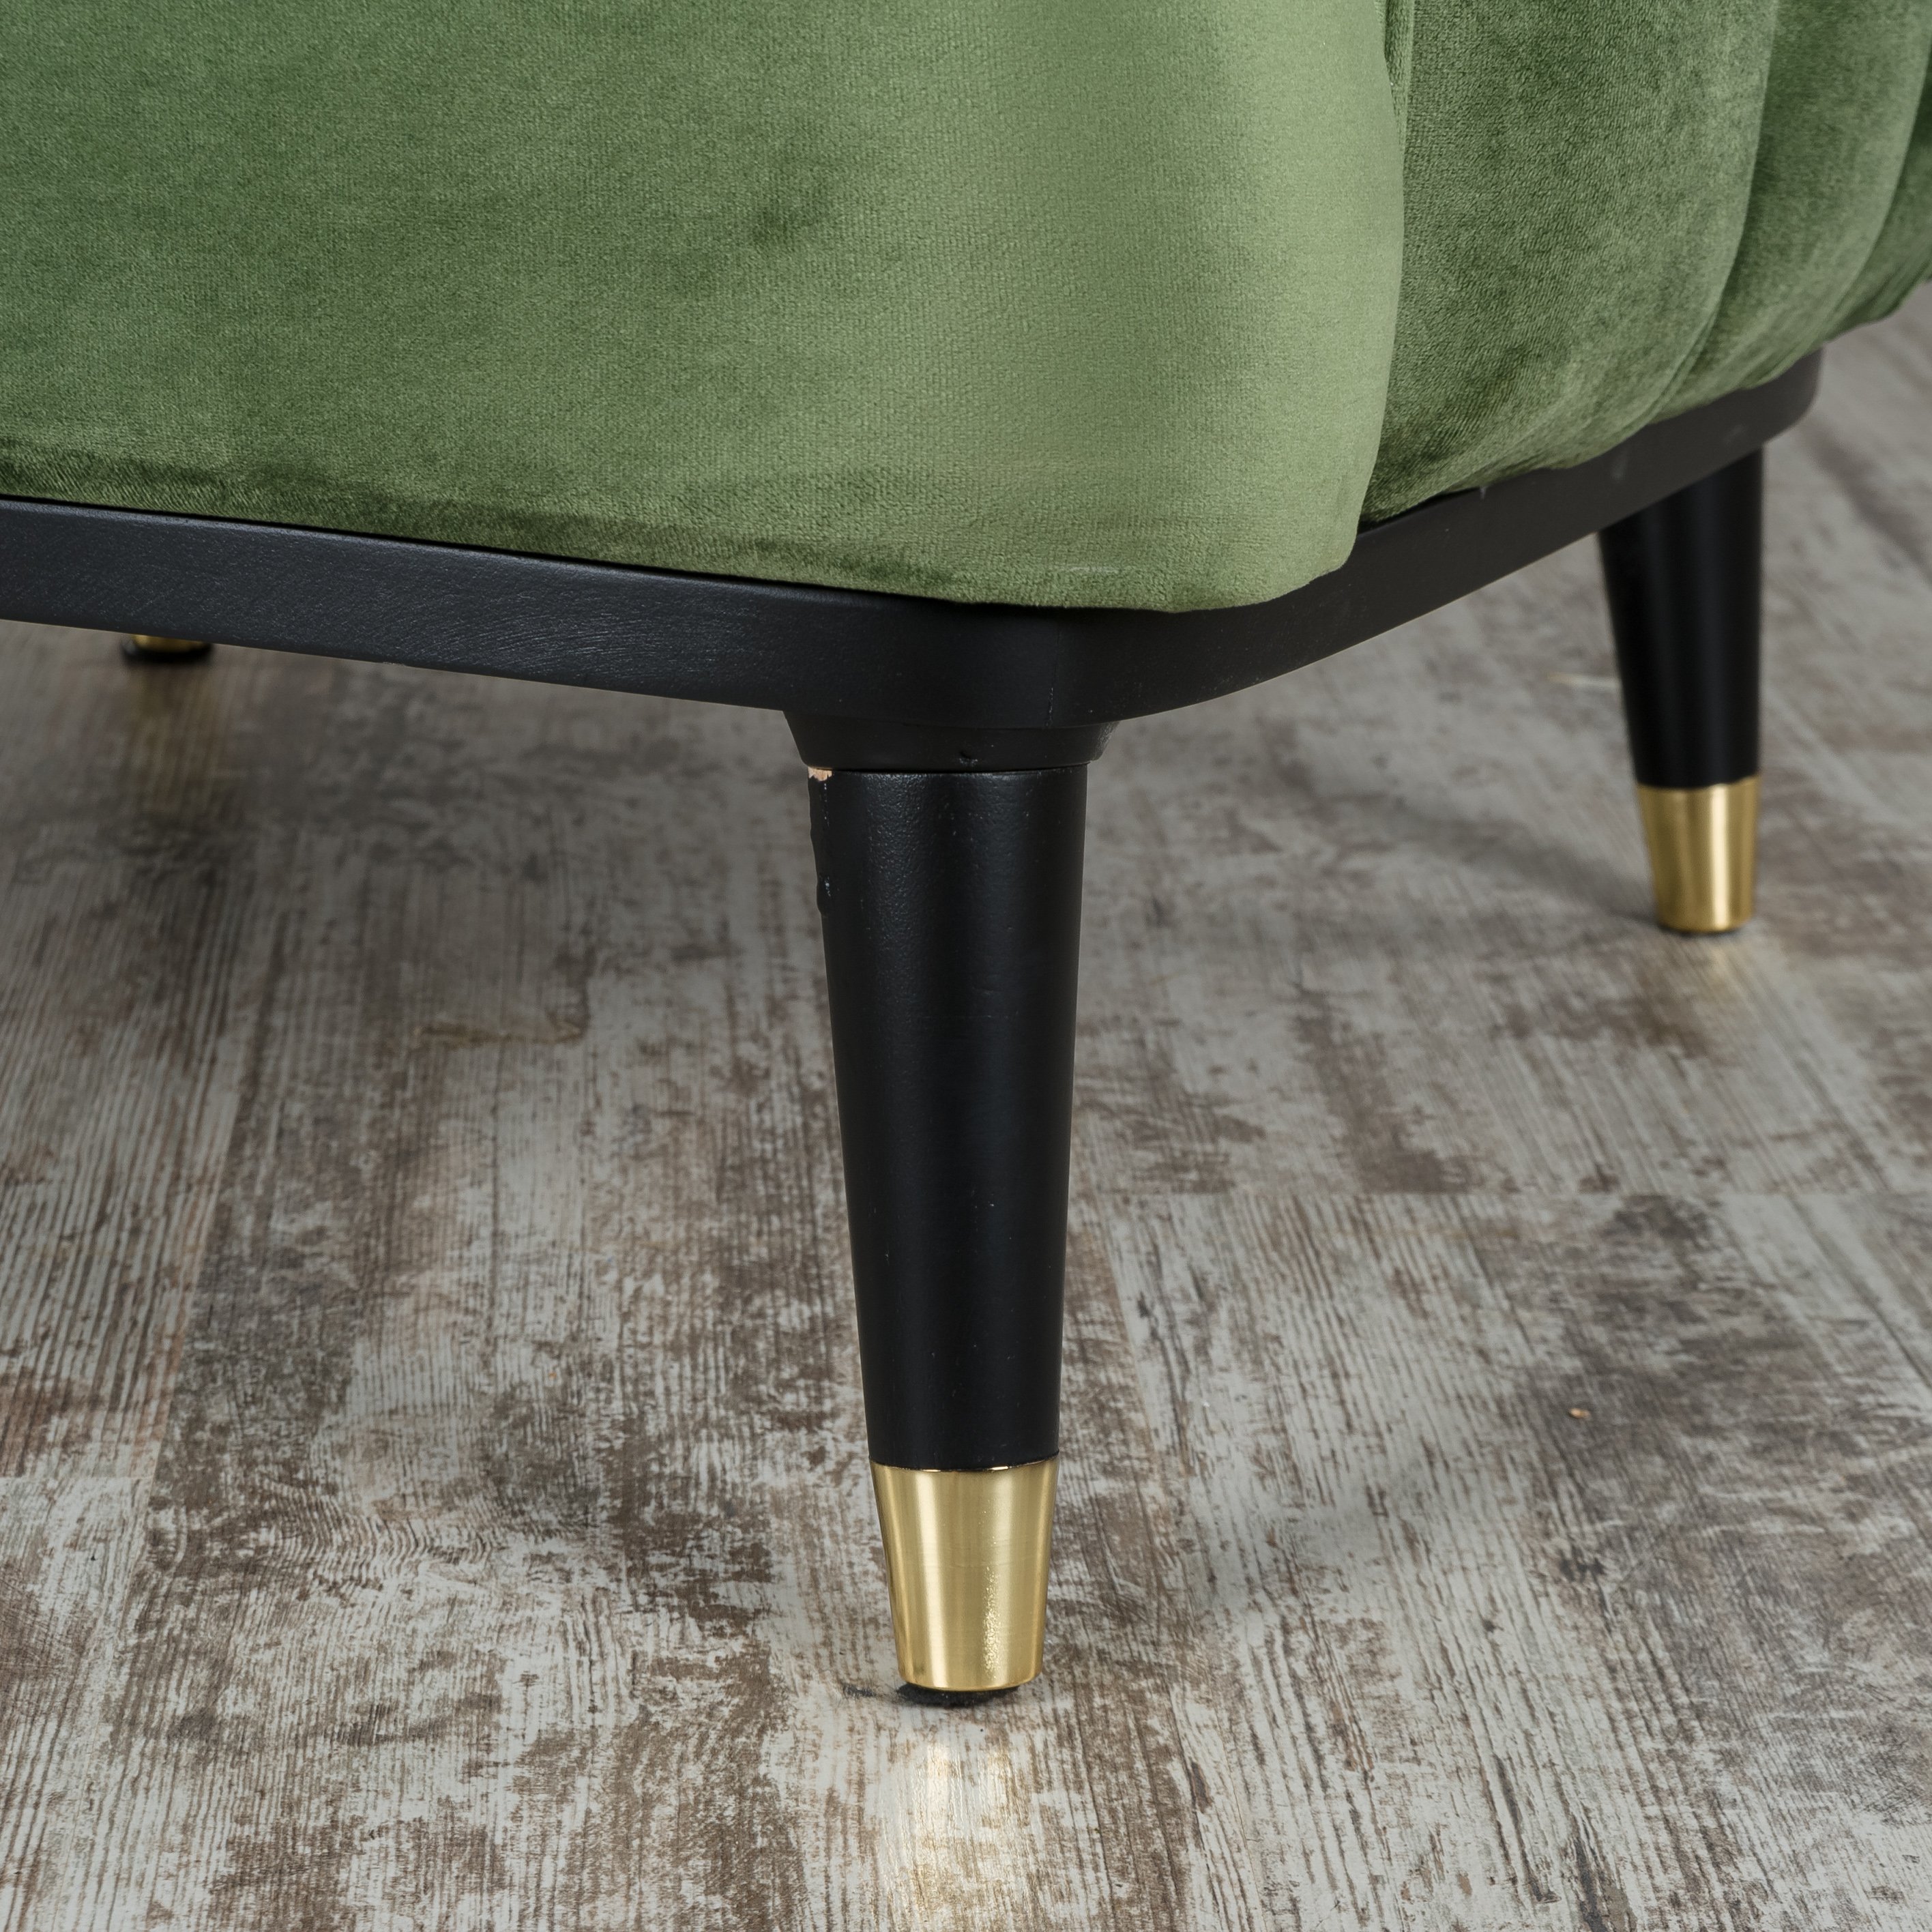 Кресло Lenova Mable, размер 85х75х97, ткань Istanbul 10/green (02206)02206